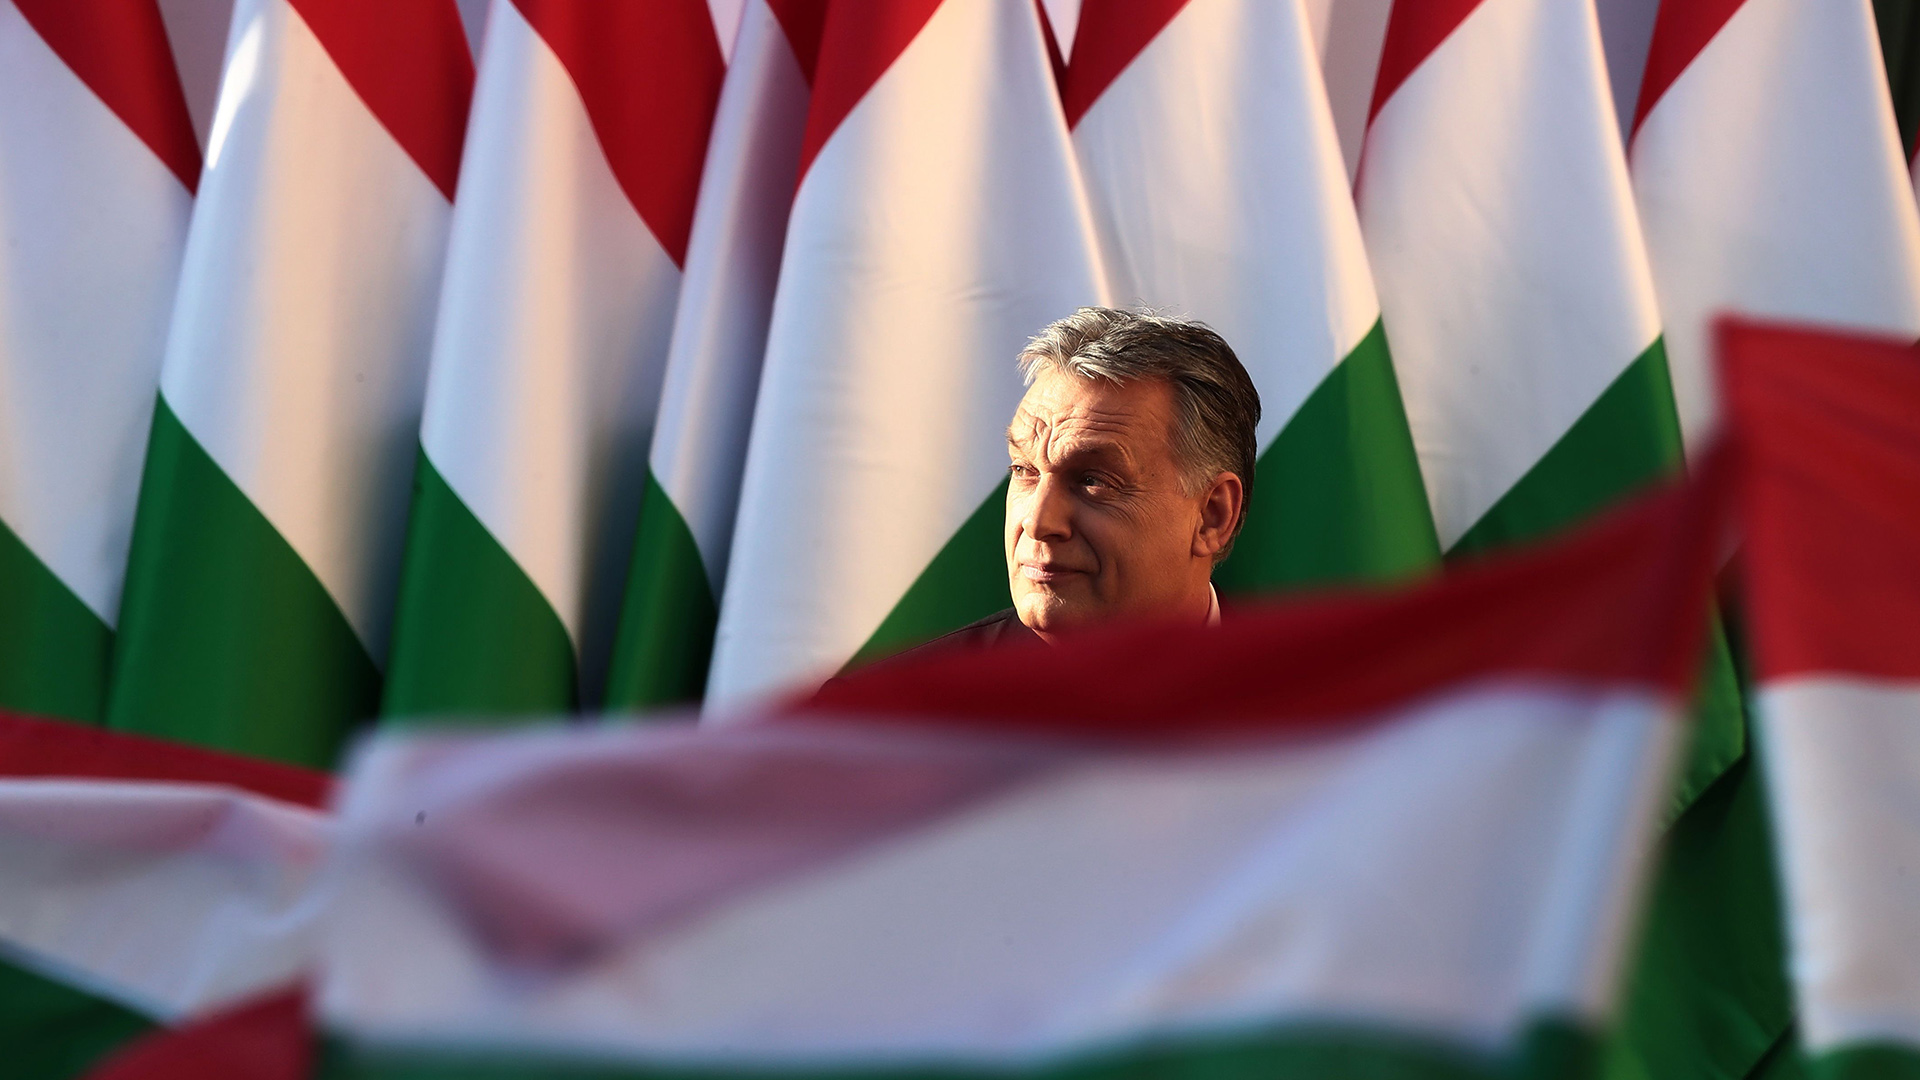 Ungarns Ministerpräsident Viktor Orban ist auf dem Rathausplatz von Szekesfehervar umgeben von grün-rot-weißen Flaggen. | AFP